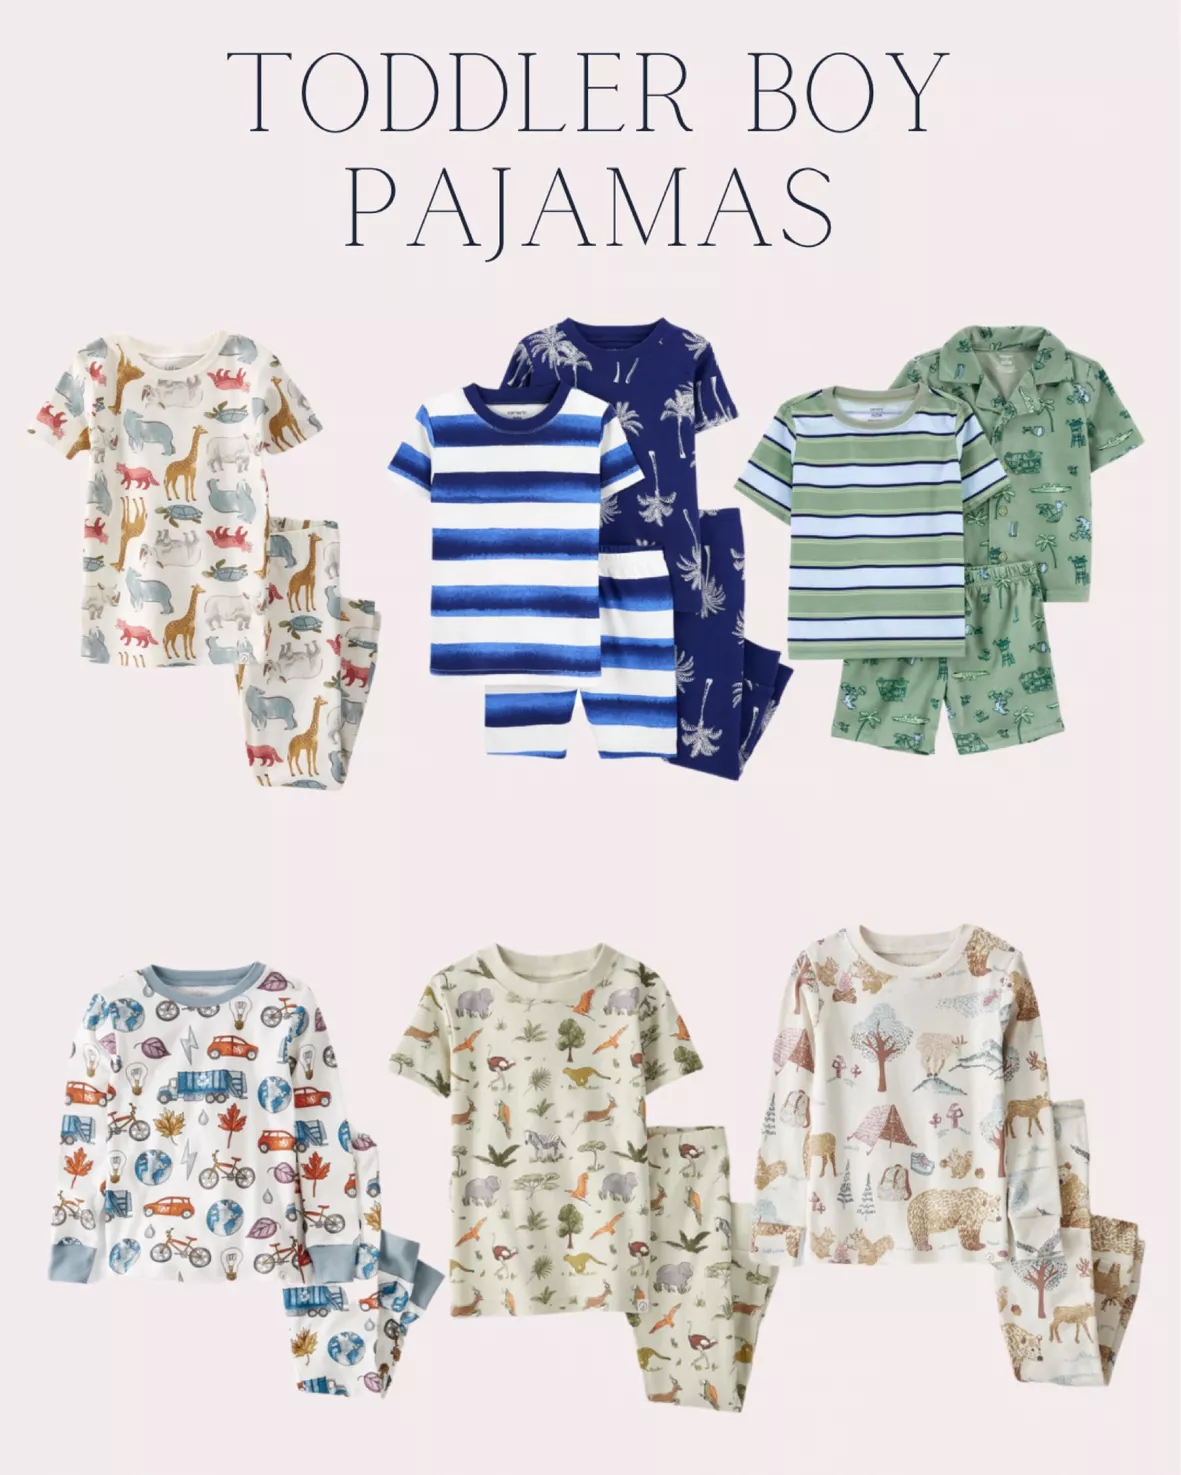 Pijama Children Summer, Summer Wear Kids Pajama Sets